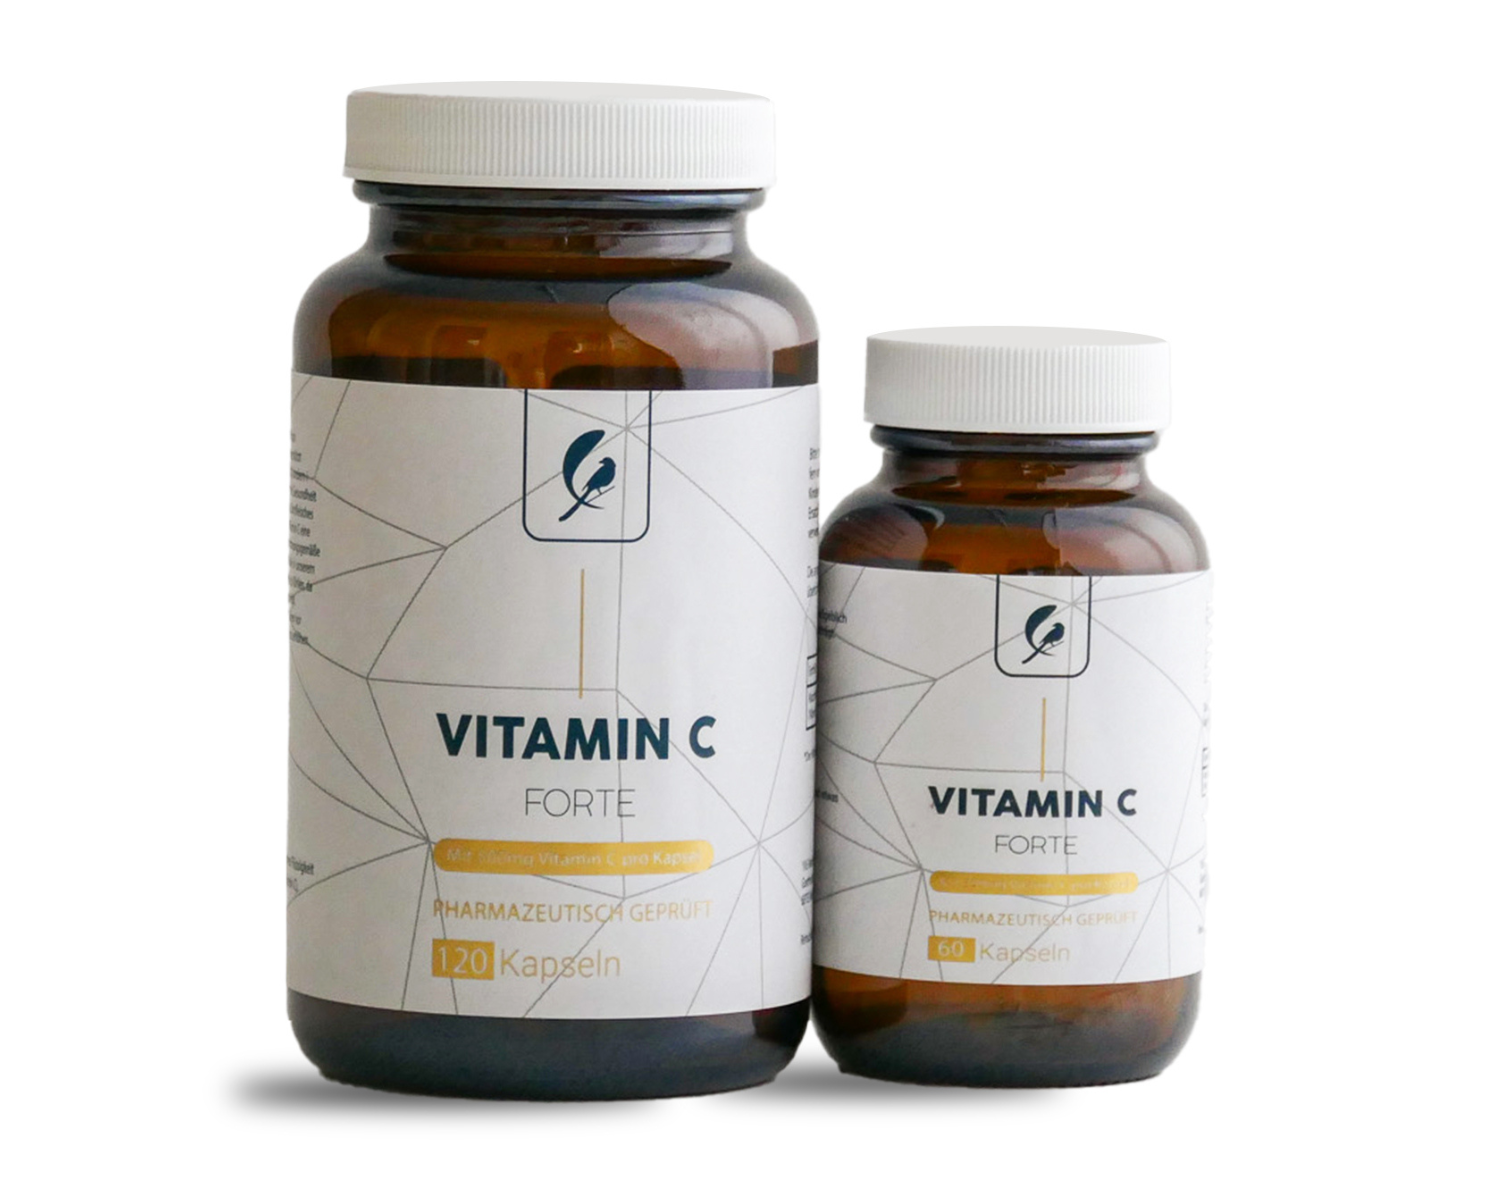 Vitamin C Fort